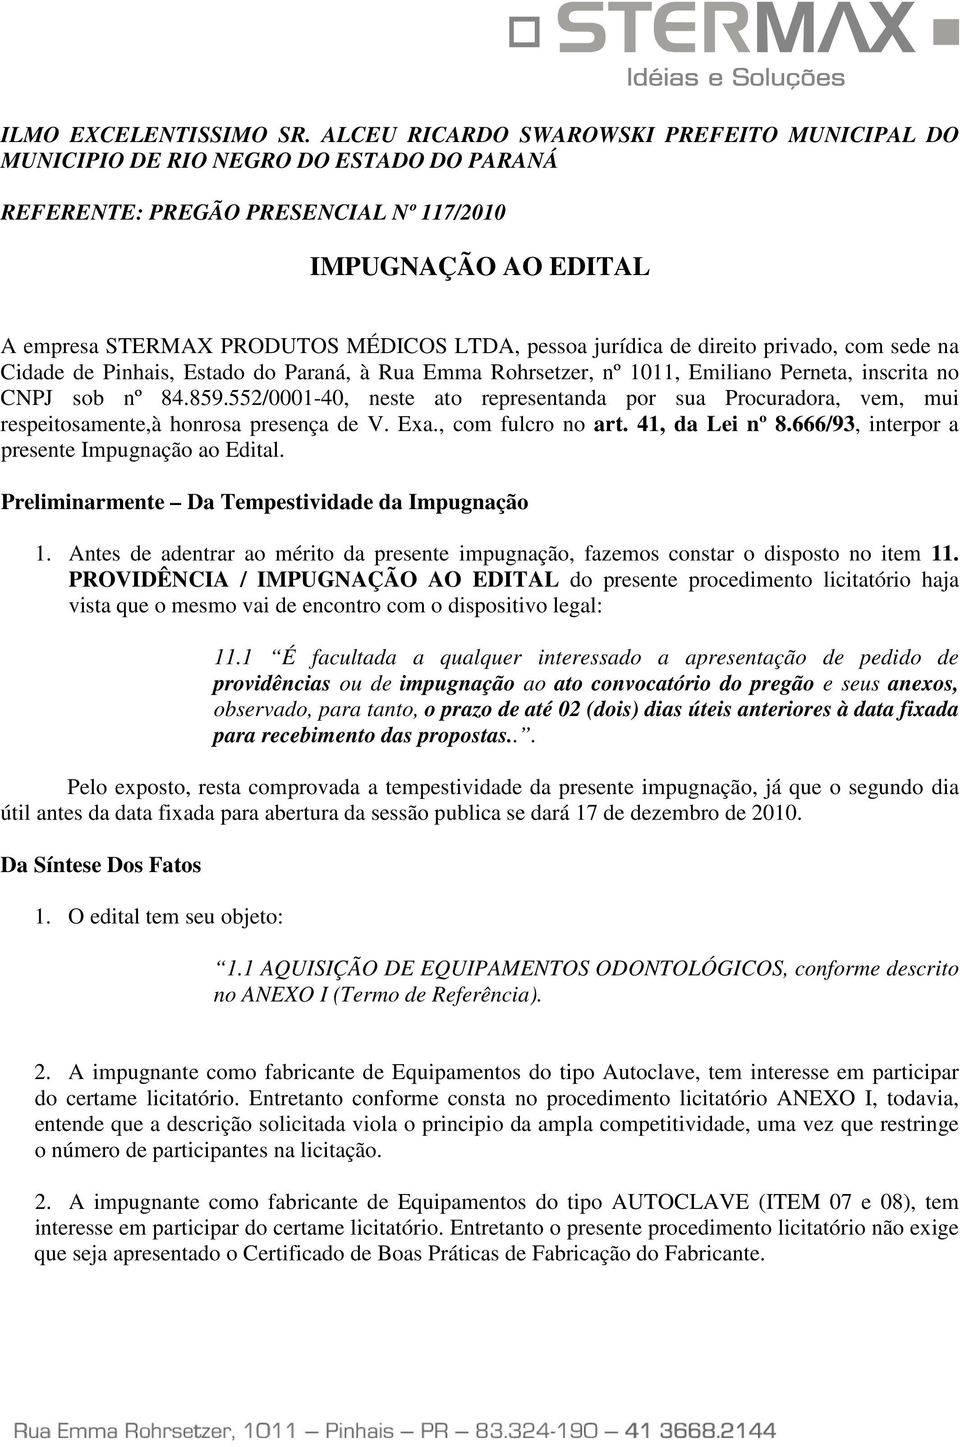 jurídica de direito privado, com sede na Cidade de Pinhais, Estado do Paraná, à Rua Emma Rohrsetzer, nº 1011, Emiliano Perneta, inscrita no CNPJ sob nº 84.859.